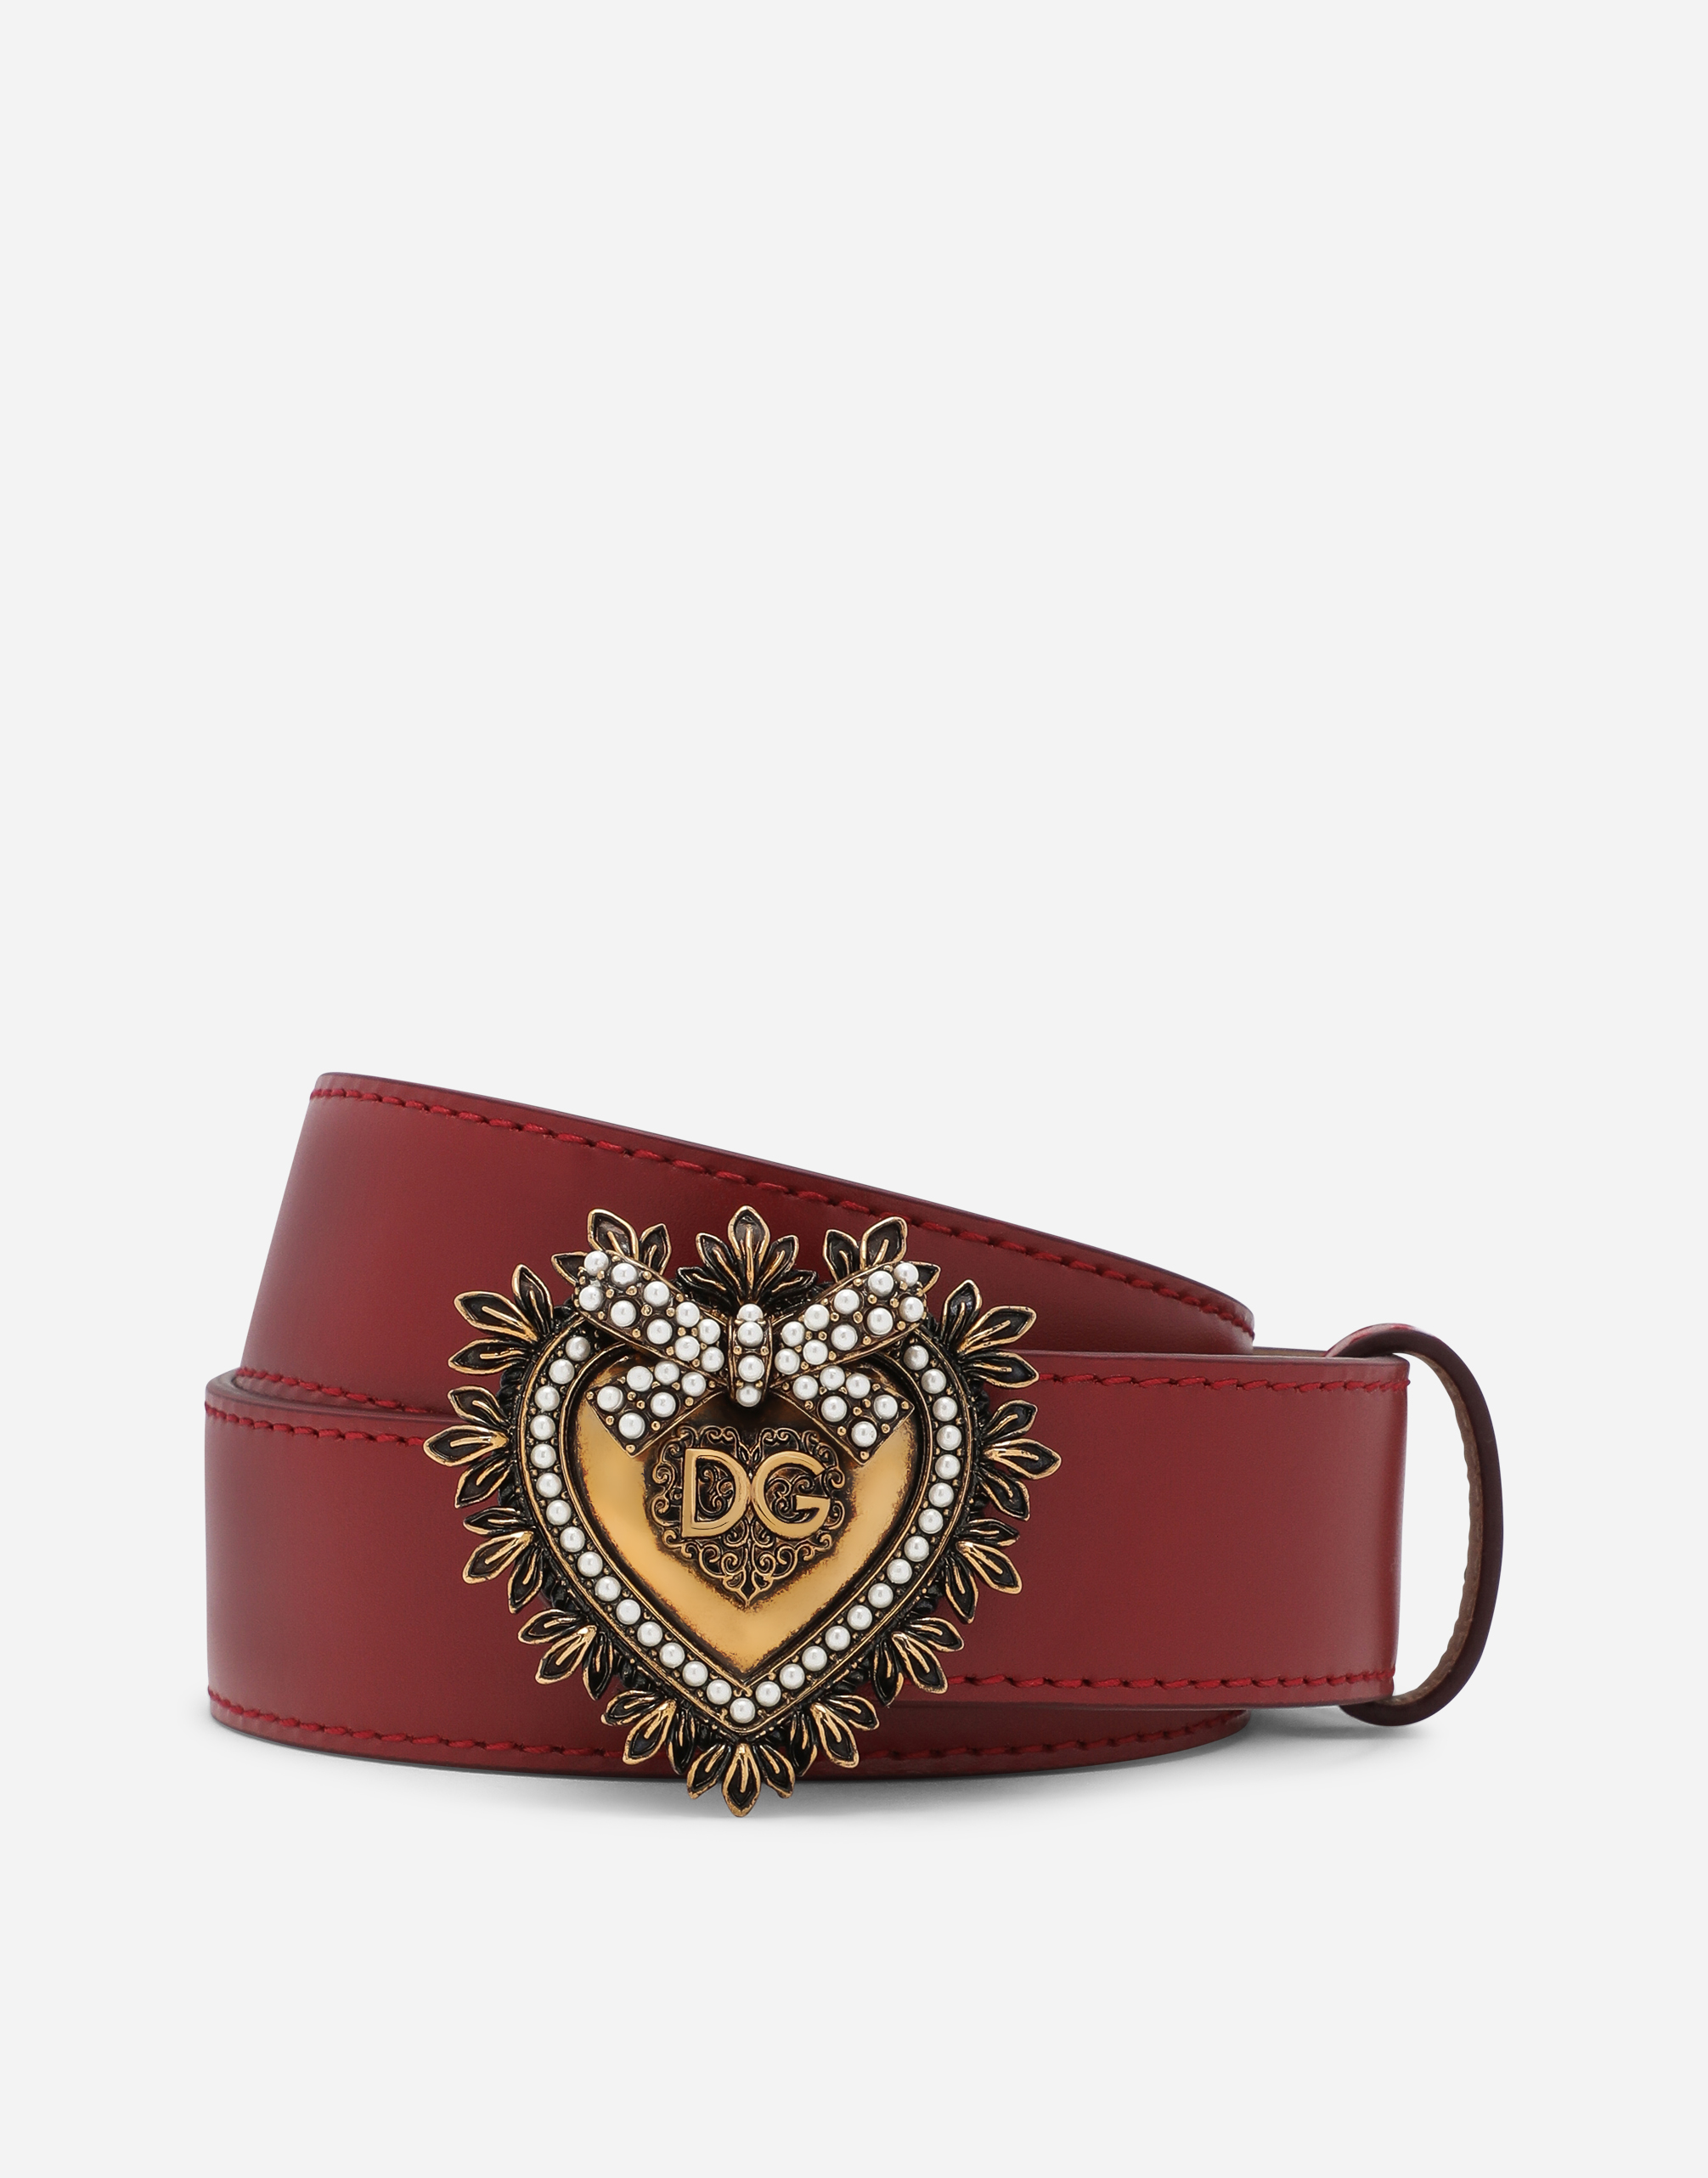 Devotion belt in lux leather